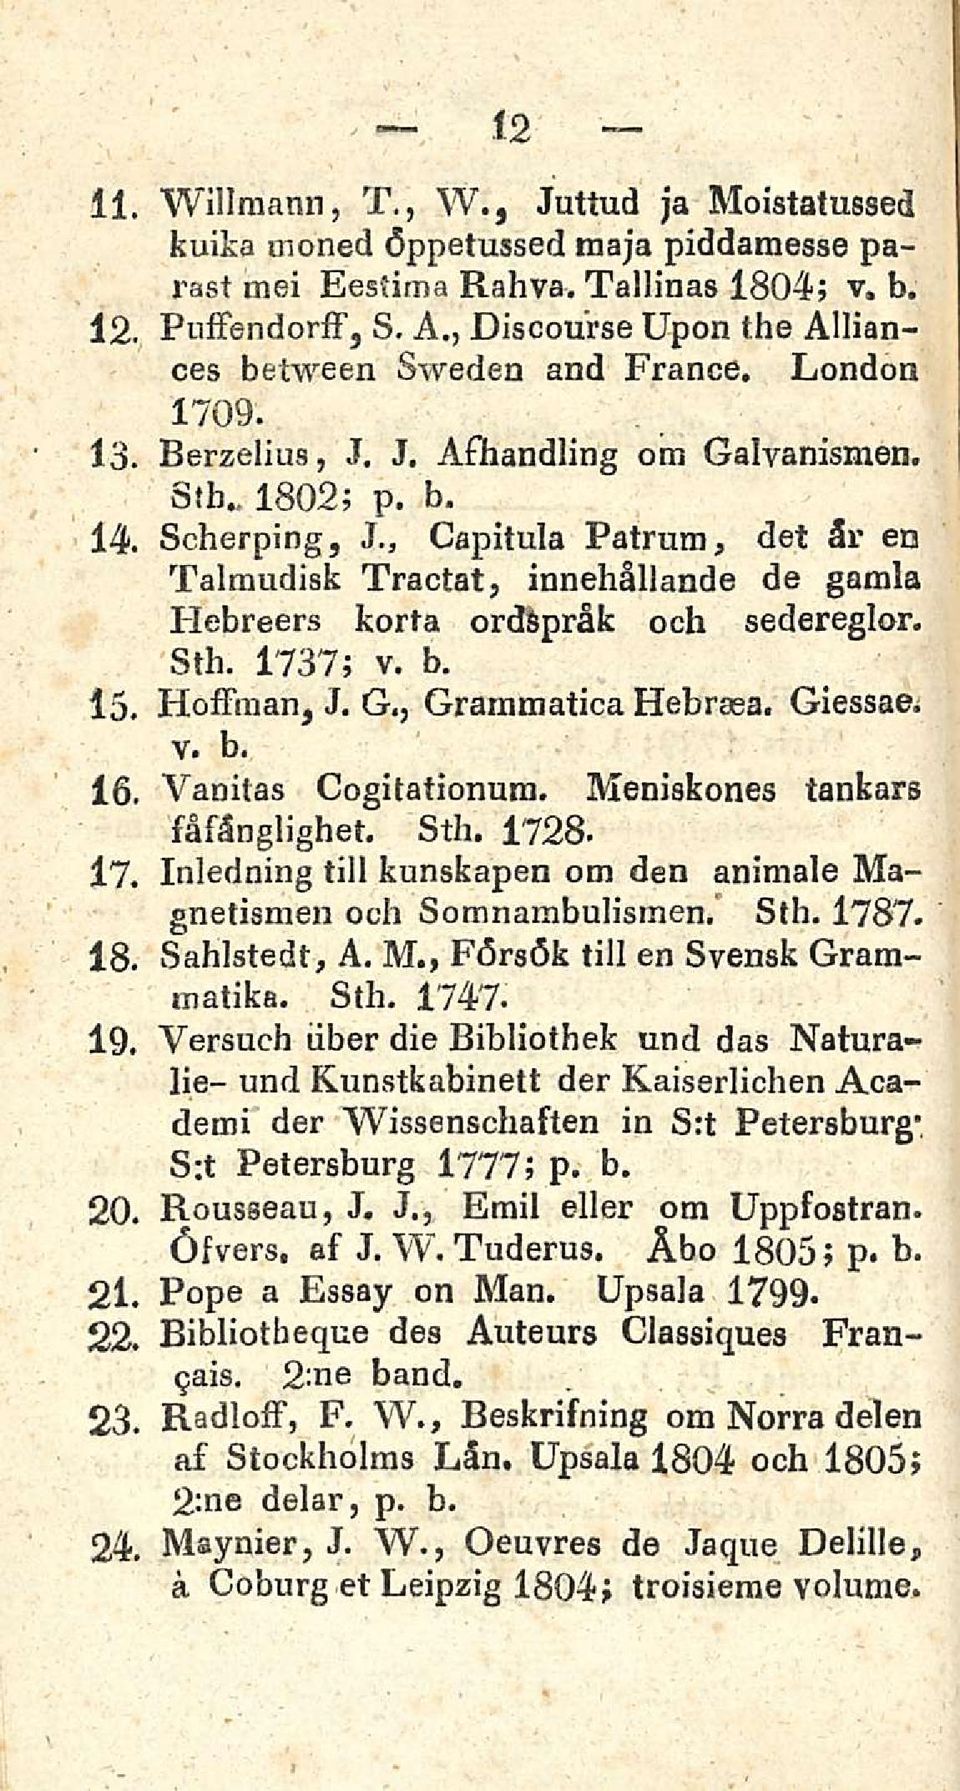 , Capitula Patrum, det ären Talraudisk Tractat, innehåliande de gamla Hebreers korta ordspråfc och sedereglor. Sth. 1737; v. b. 15 Hoffman, J. G., Grammatica Hebrasa. v. b. 16, Vaöitas Cogitationura.